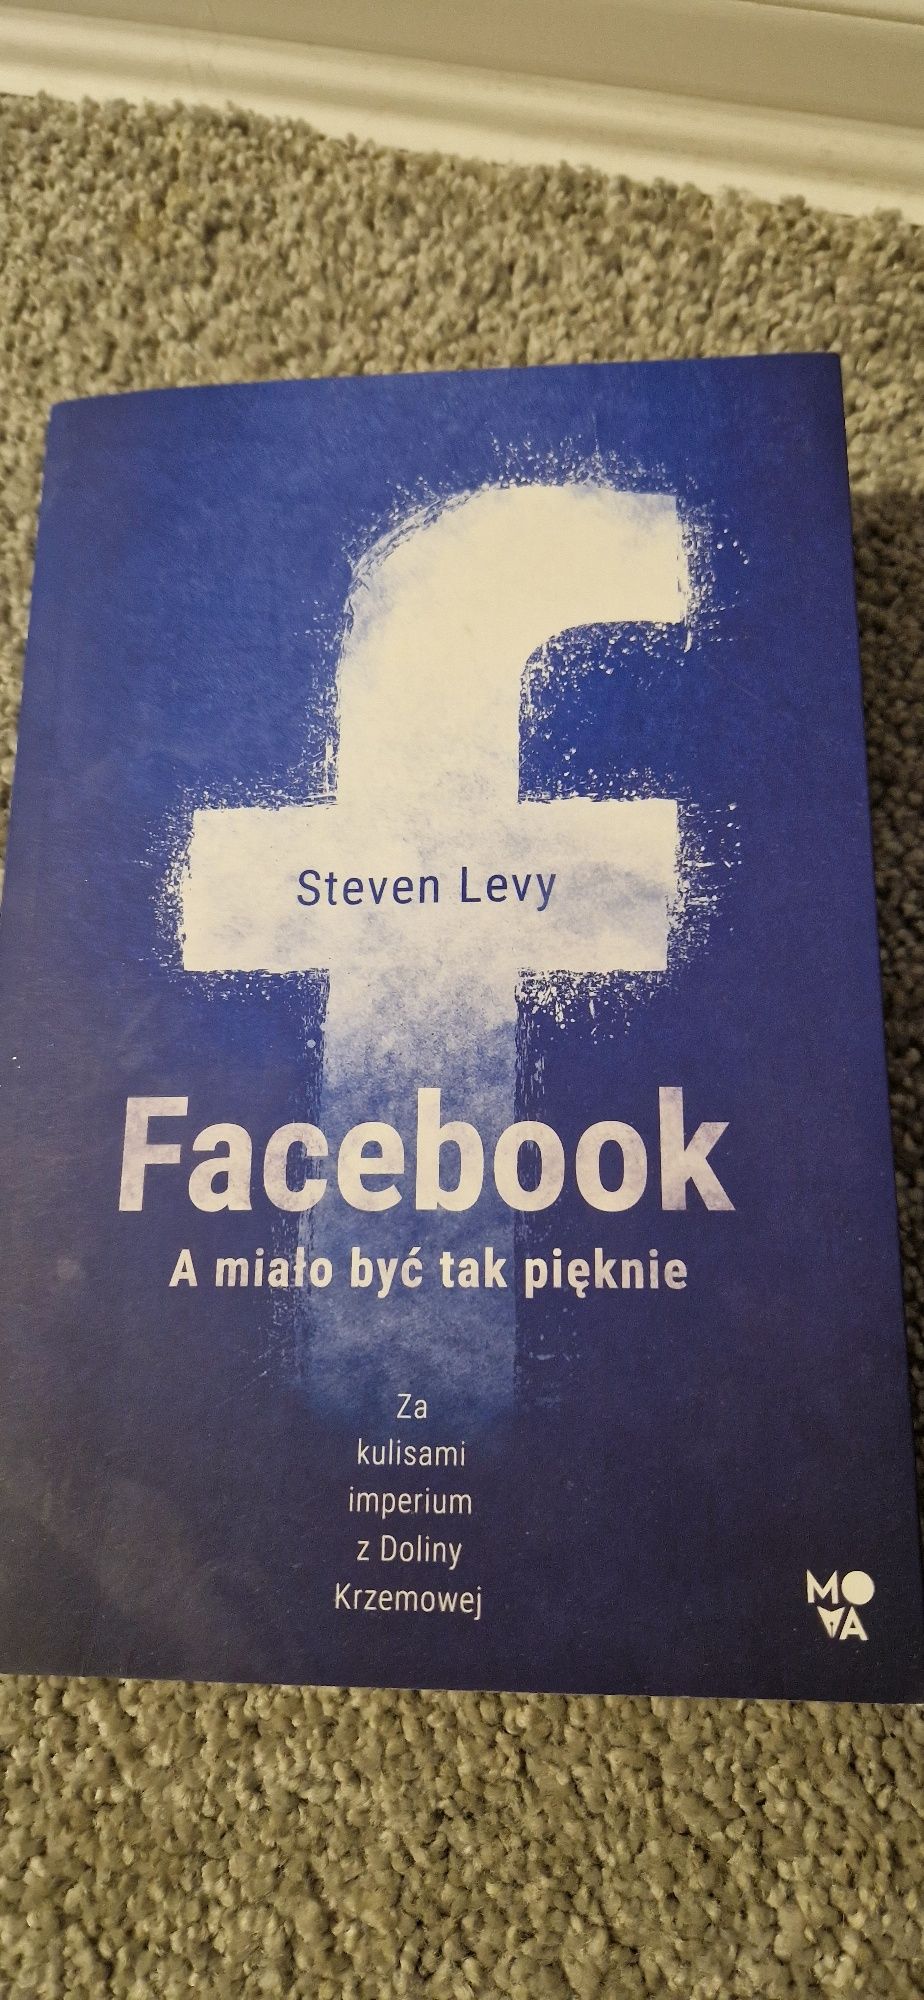 Facebook a miało być tak pięknie Steven Levy